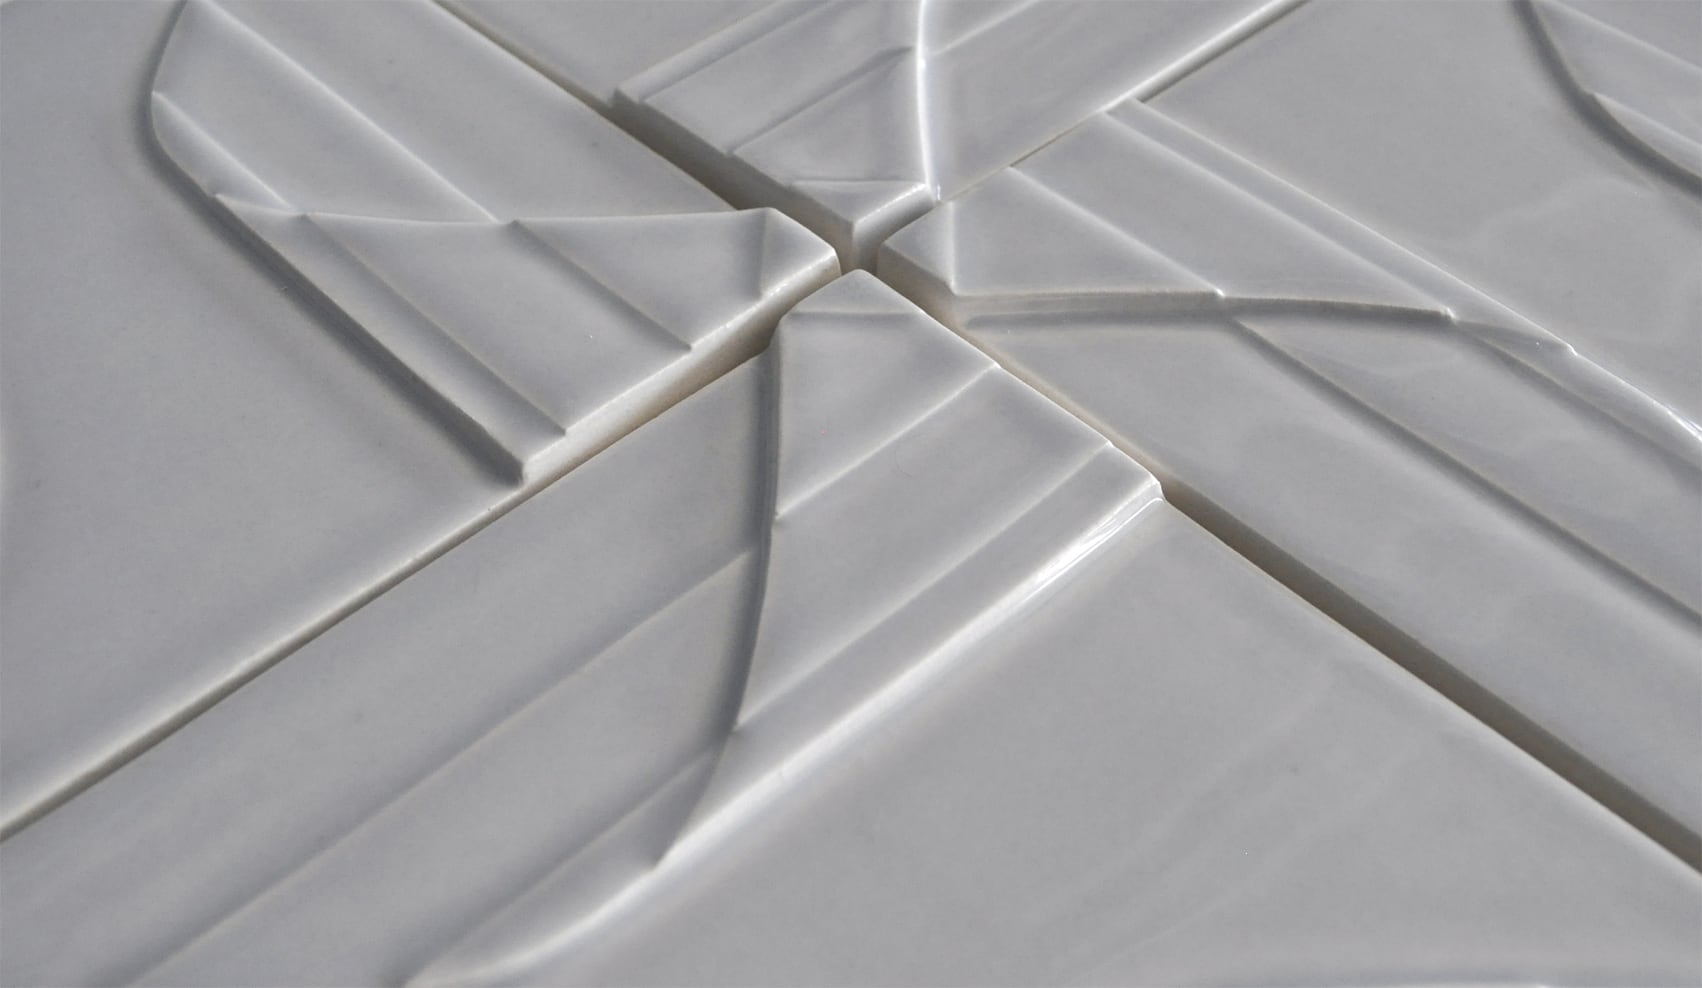 Four white square textured tiles placed edge to edge to create a pinwheel pattern